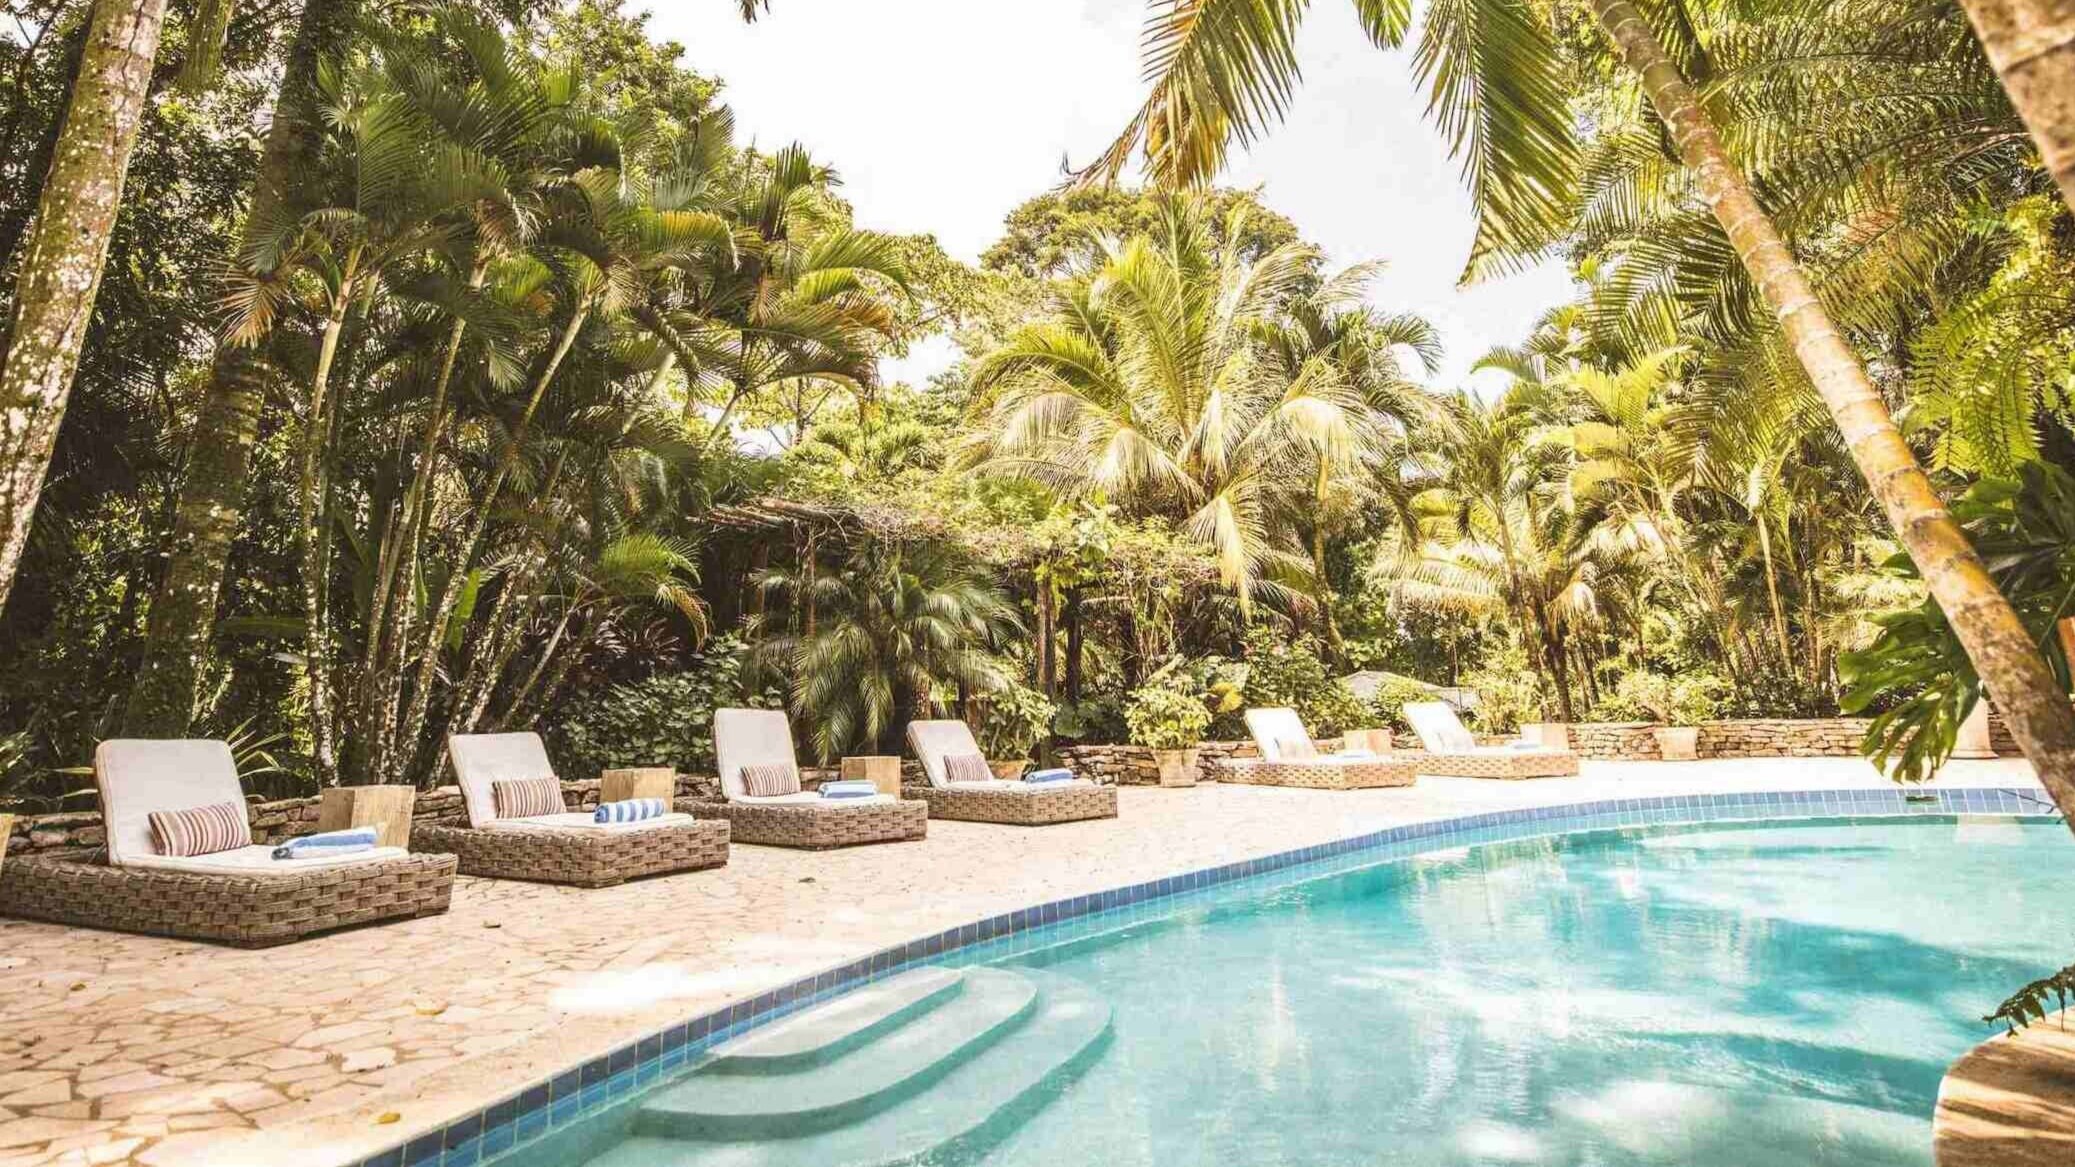 Copal Tree Lodge for retreats in Belize